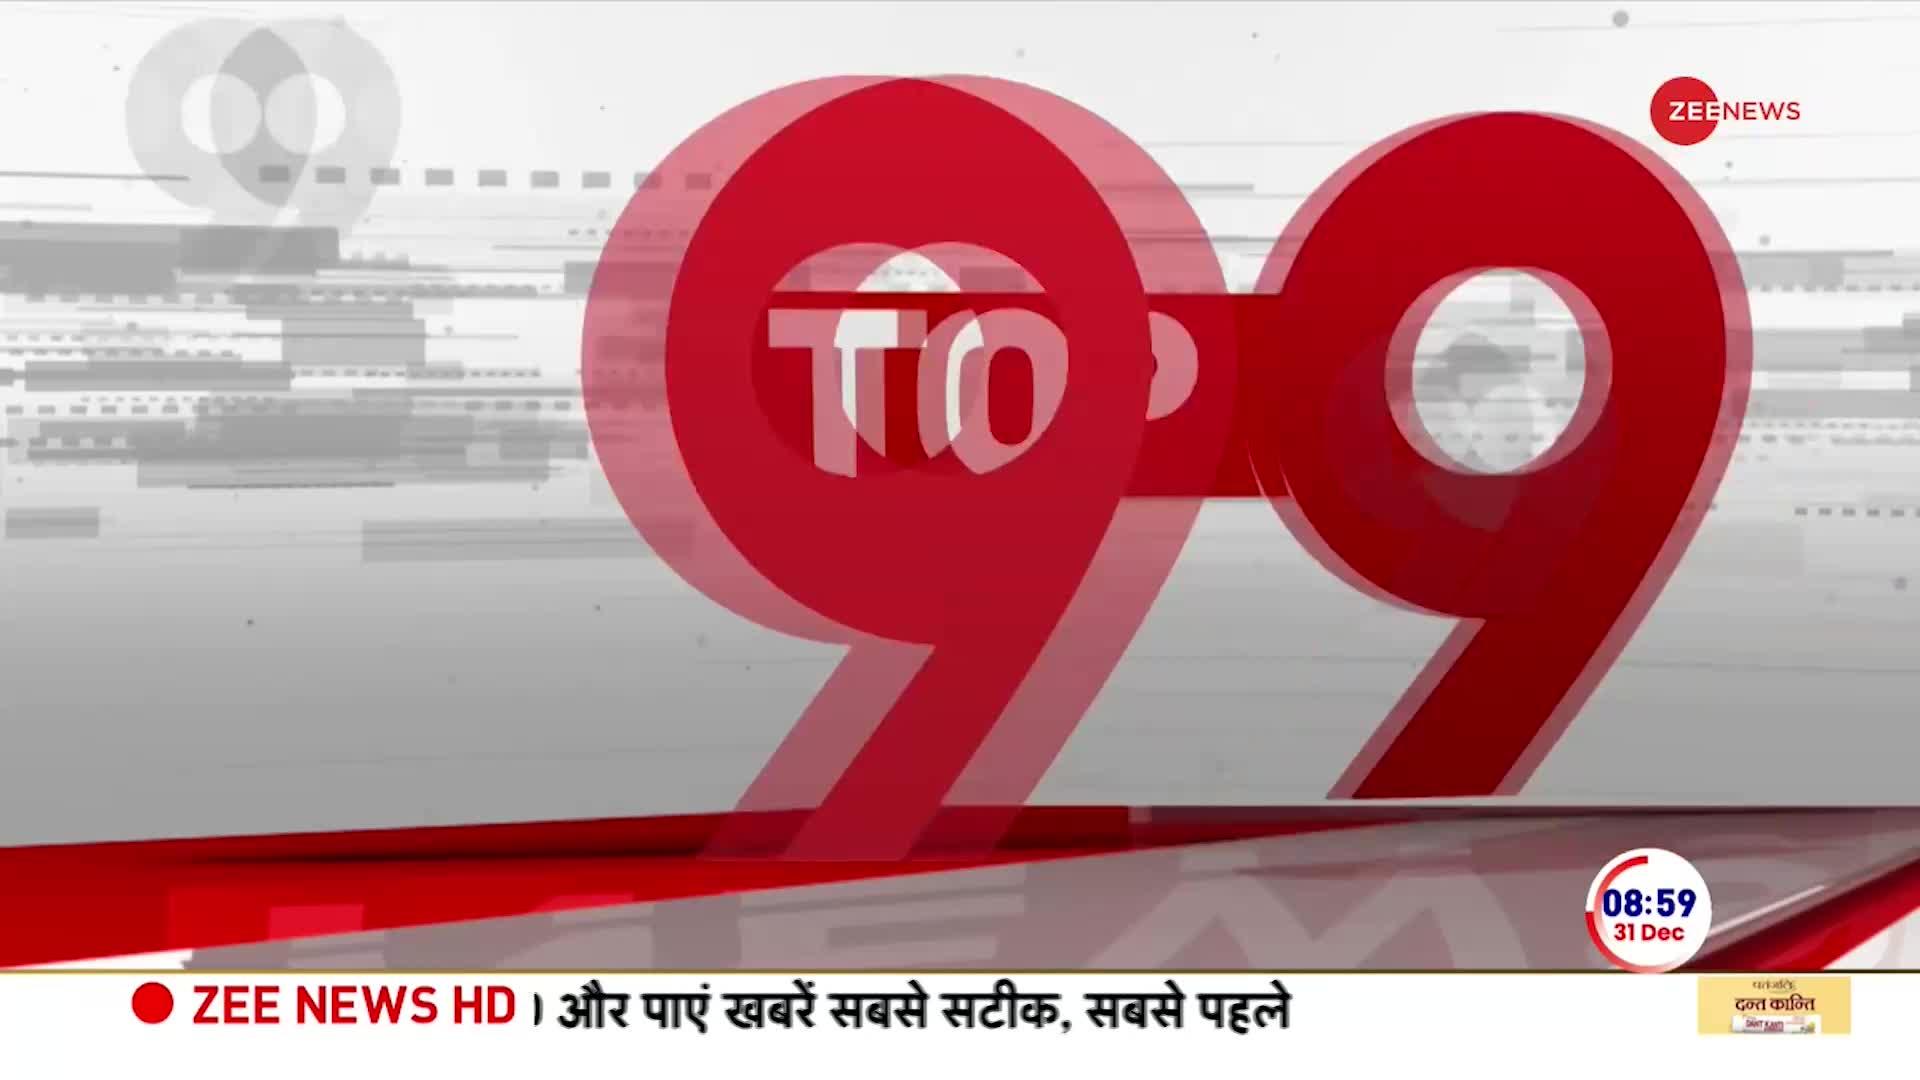 Top 9 News: PM मोदी के मन की बात का आज 108वां एपिसोड होगा प्रसारित, फिट इंडिया पर करेंगे चर्चा | 31 Dec